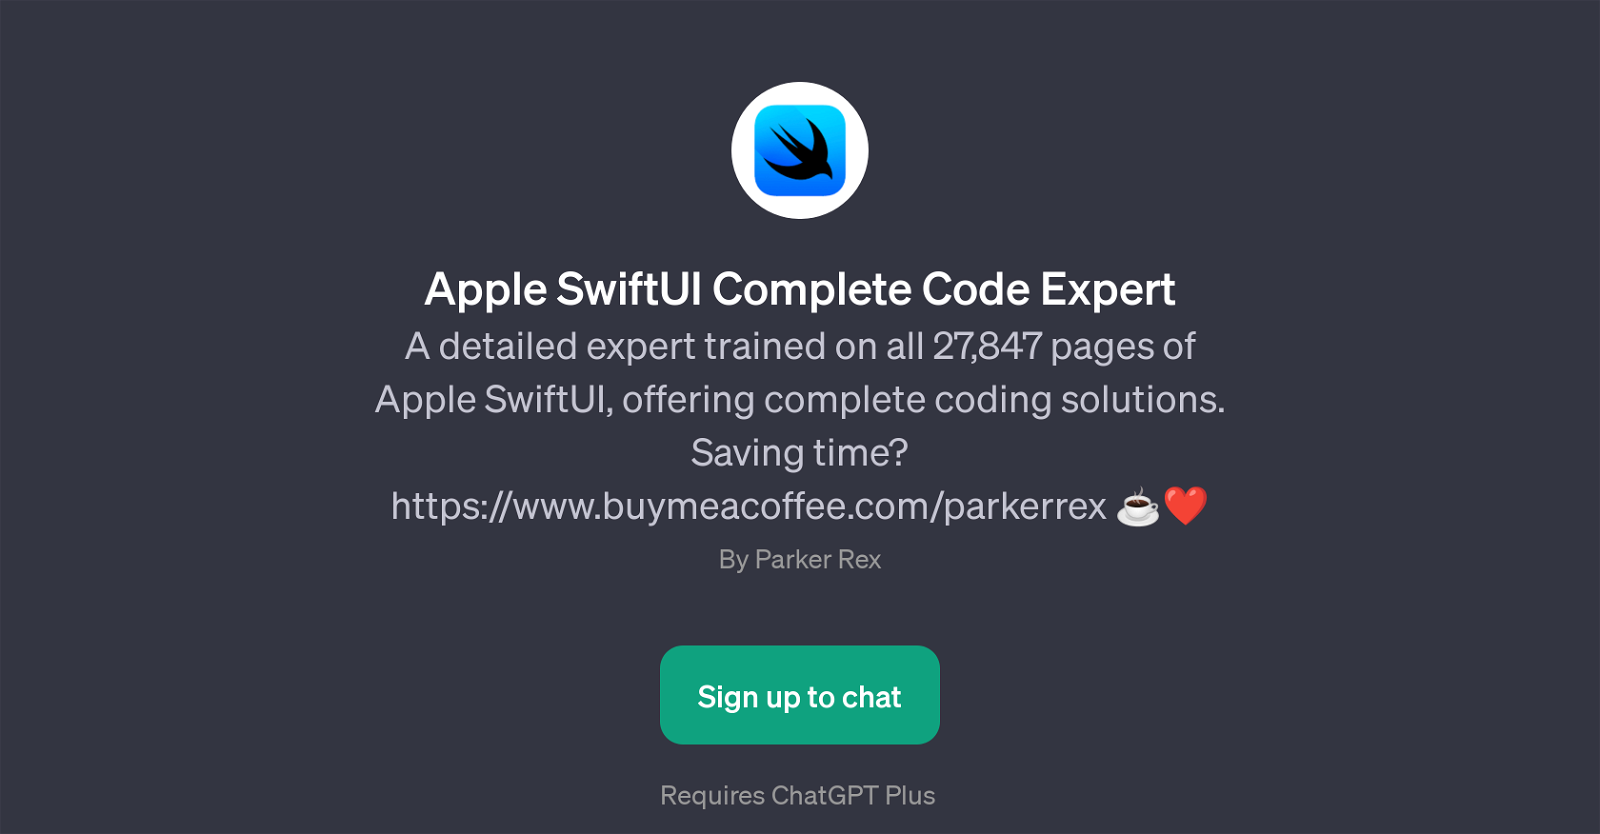 Apple SwiftUI Complete Code Expert website